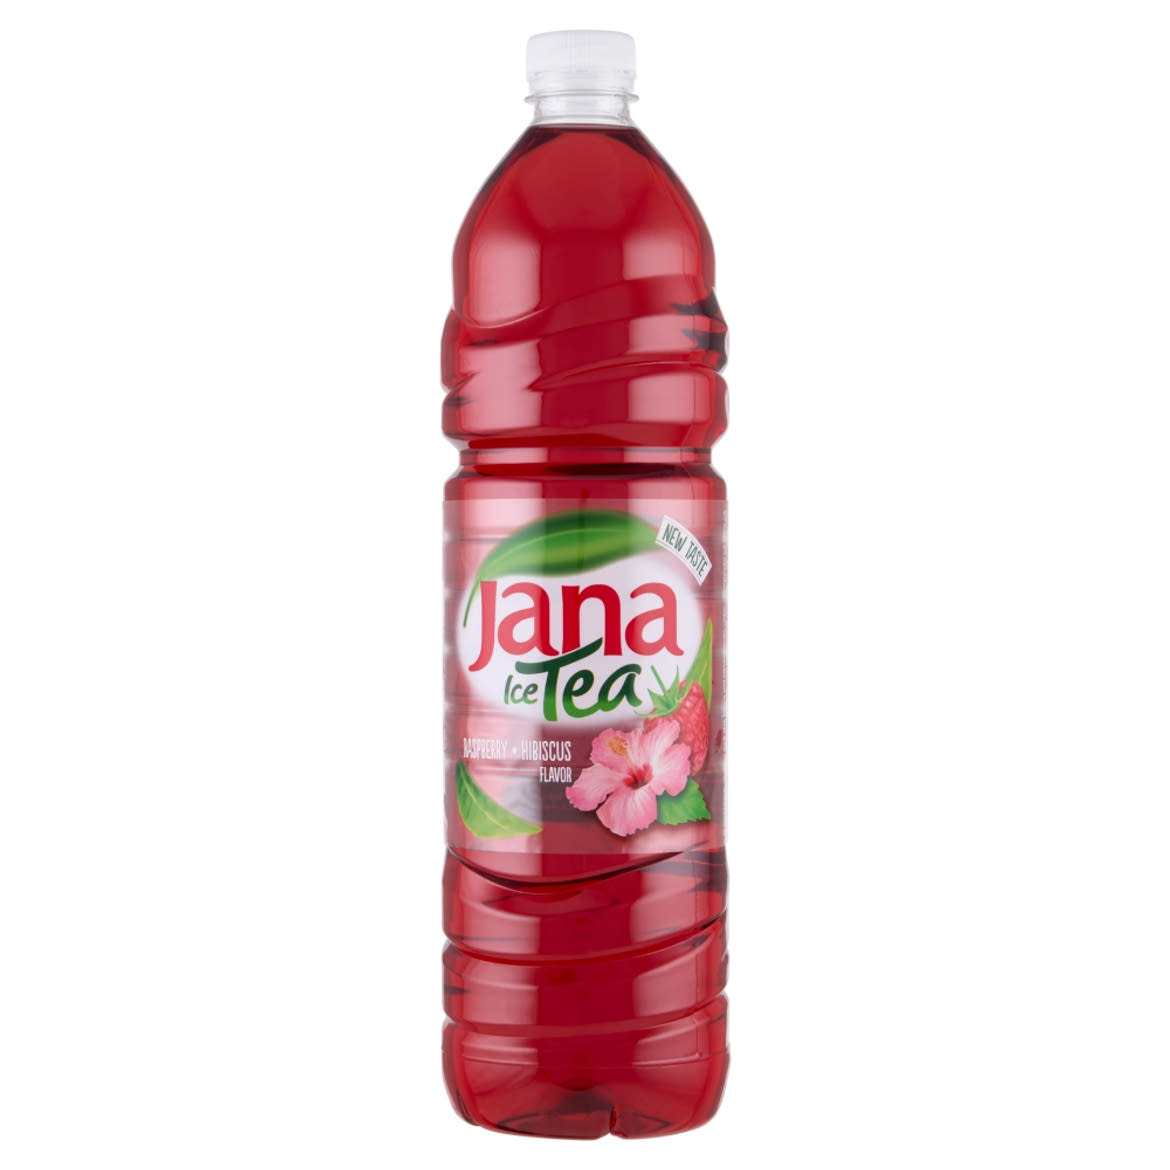 Jana Ice Tea csökkentett energiataralmú szénsavmentes málna-hibiszkusz ízesítésű üdítőital